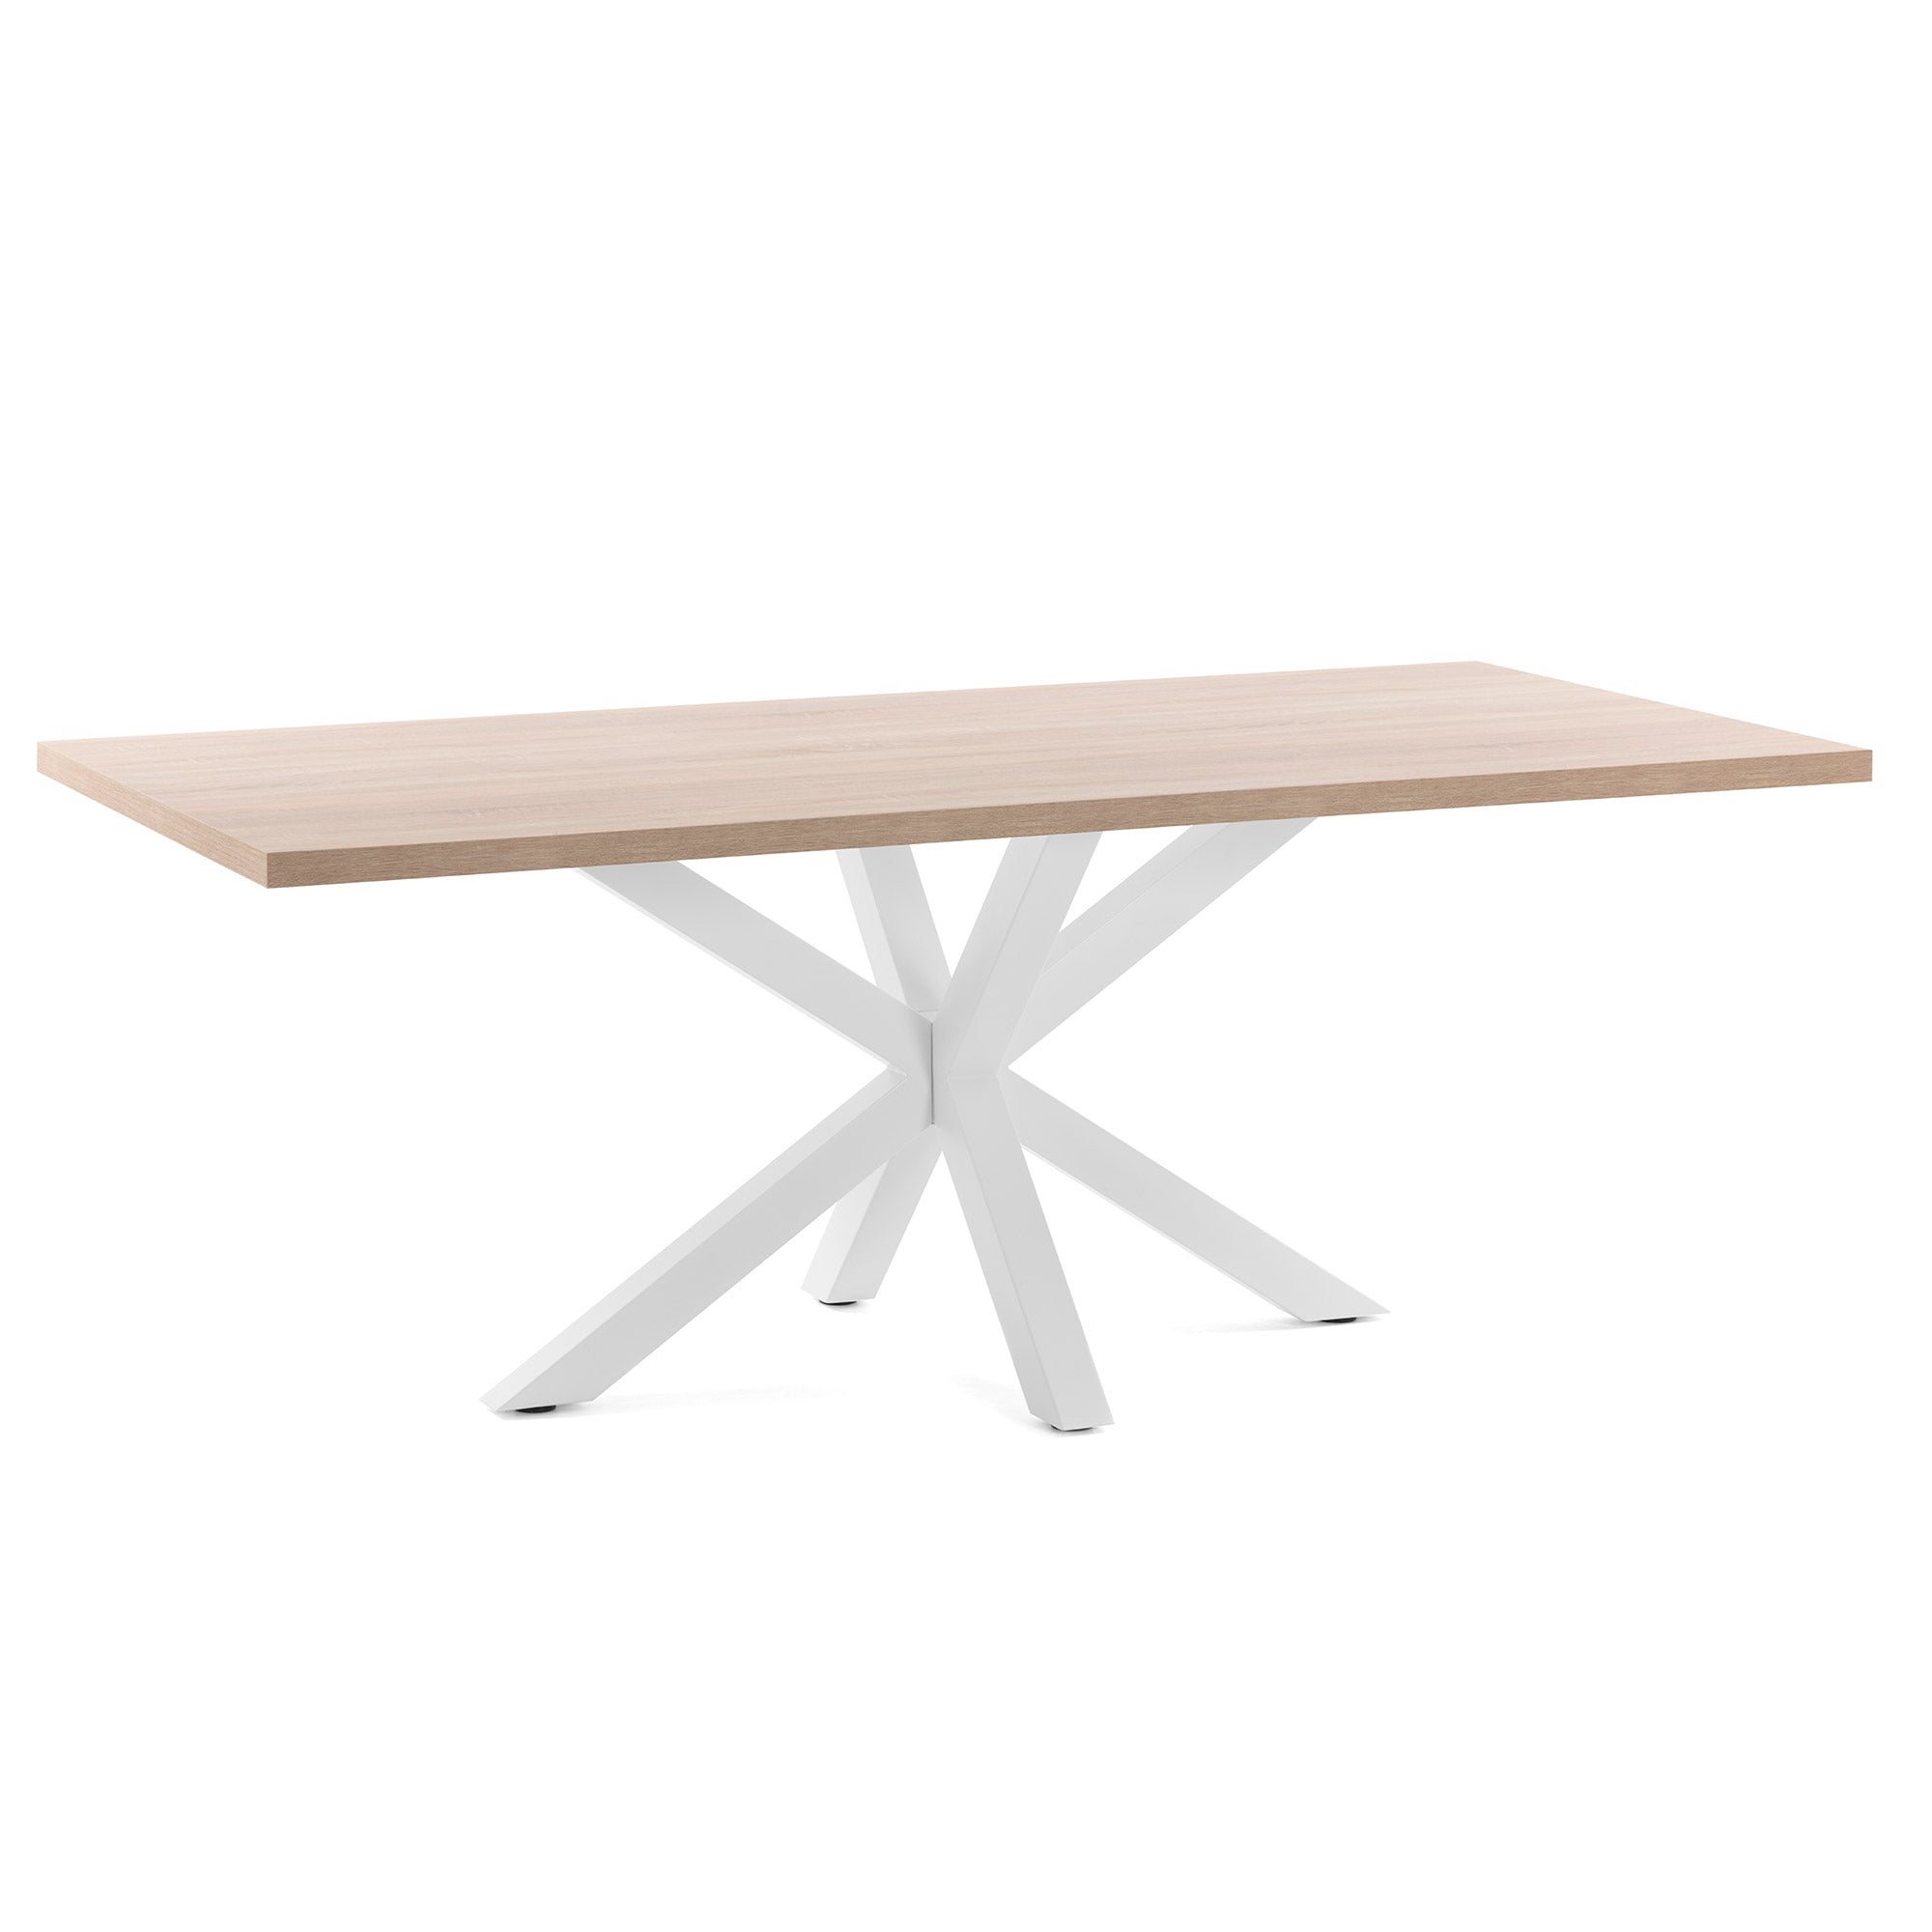 Argo table 160 cm natural melamine white legs